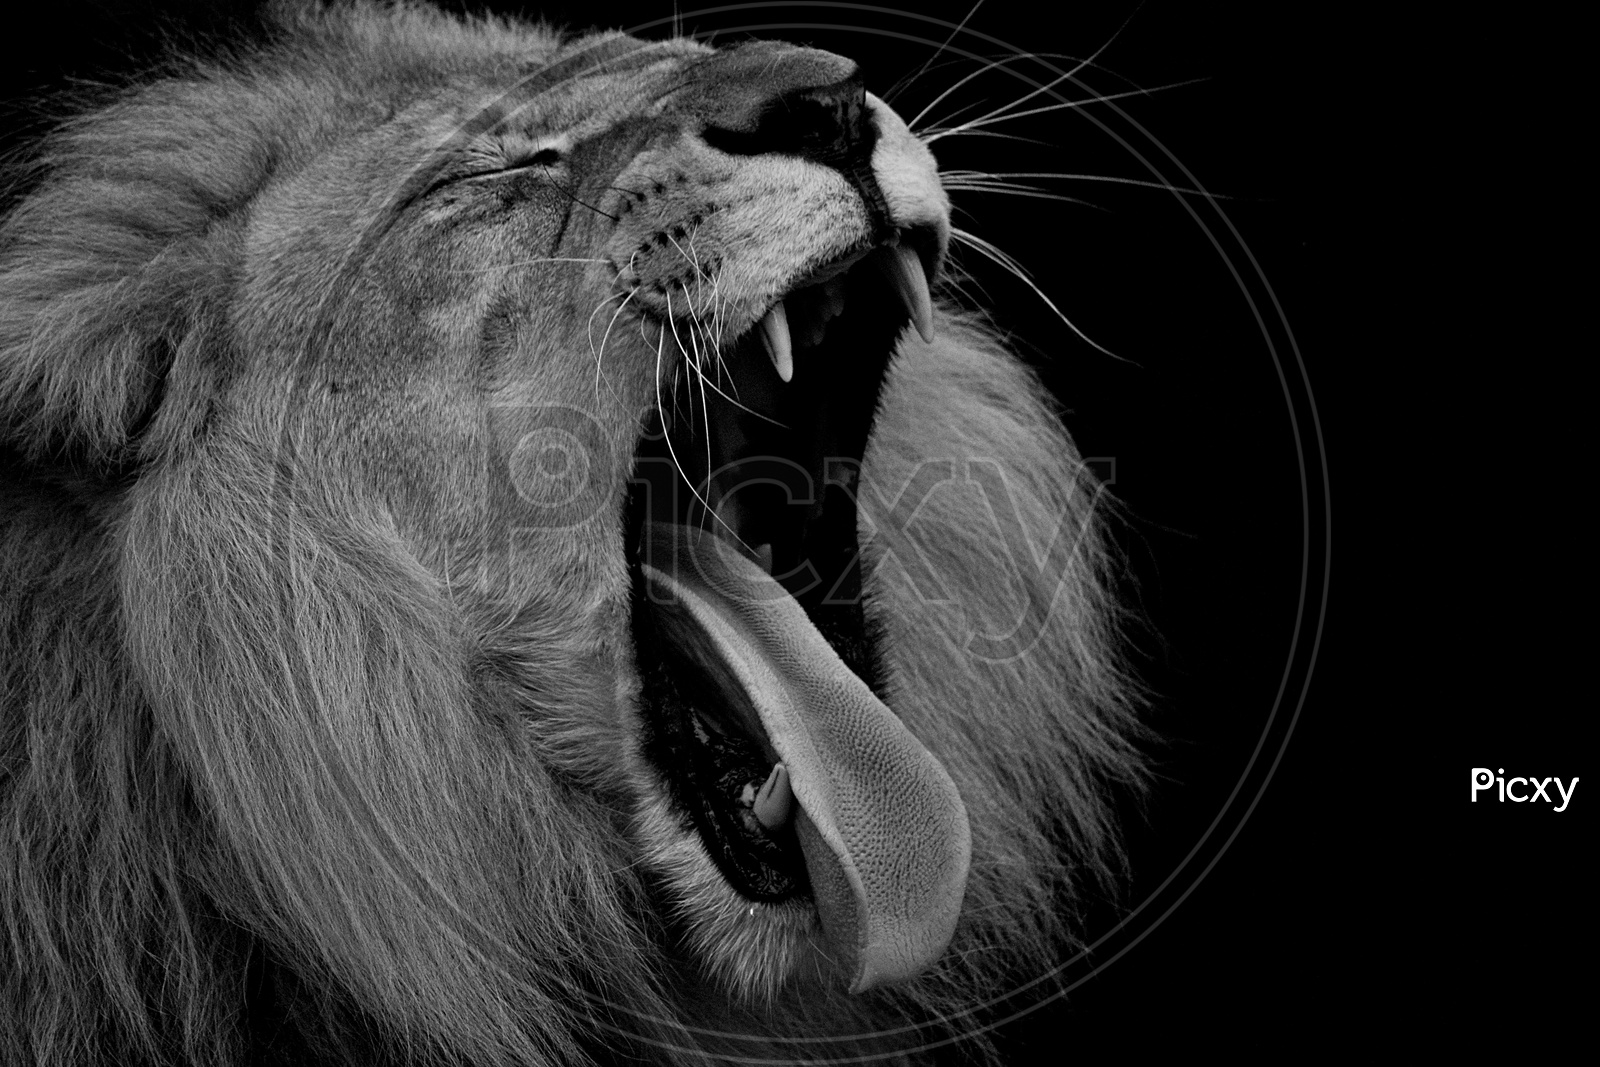 roaring lion in low key lighting